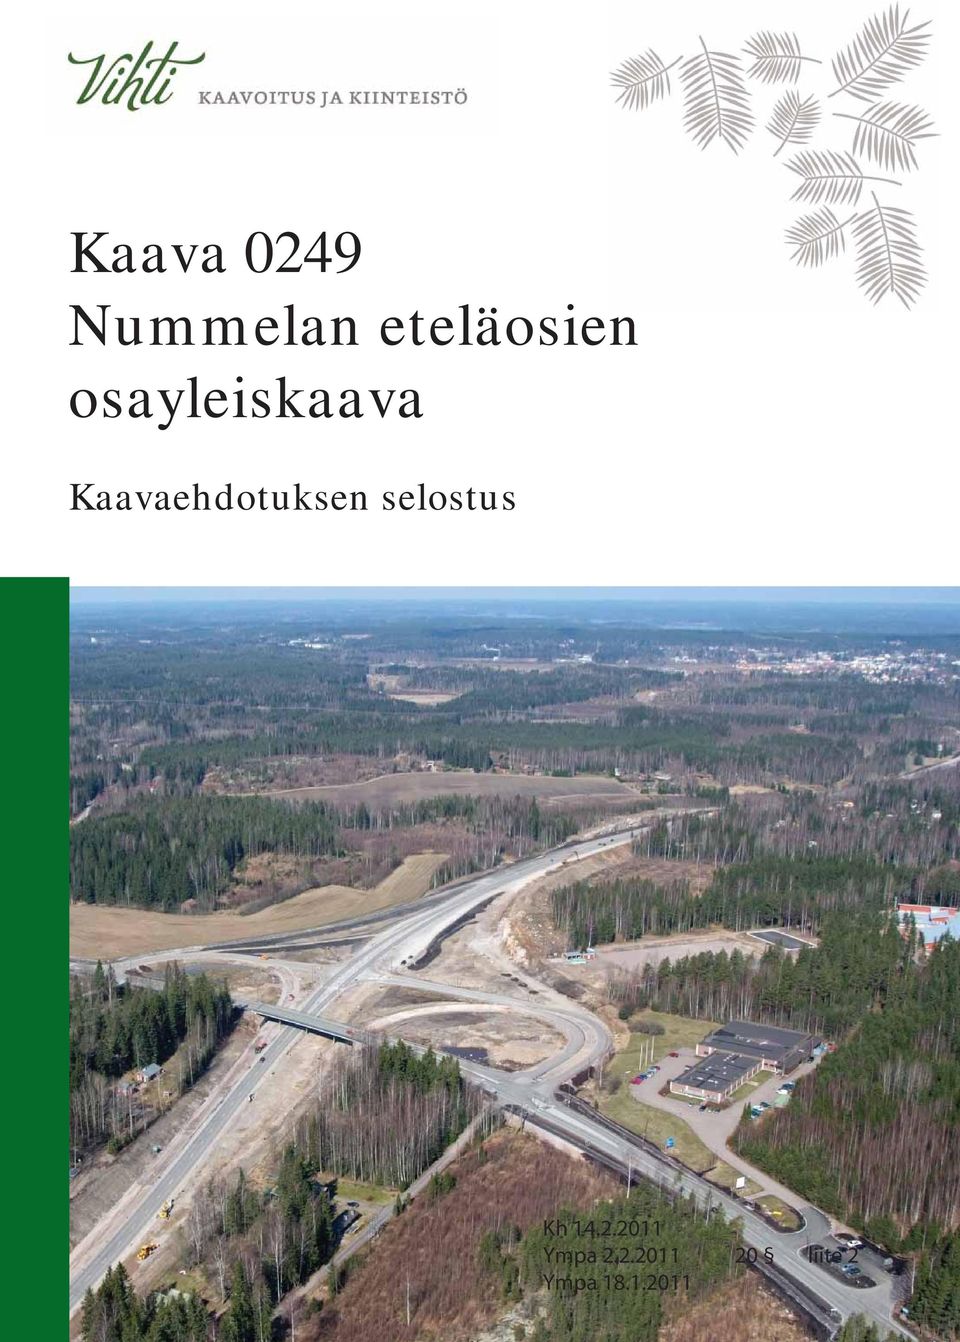 Kaava 0249 Nummelan eteläosien osayleiskaava. Kaavaehdotuksen selostus -  PDF Ilmainen lataus